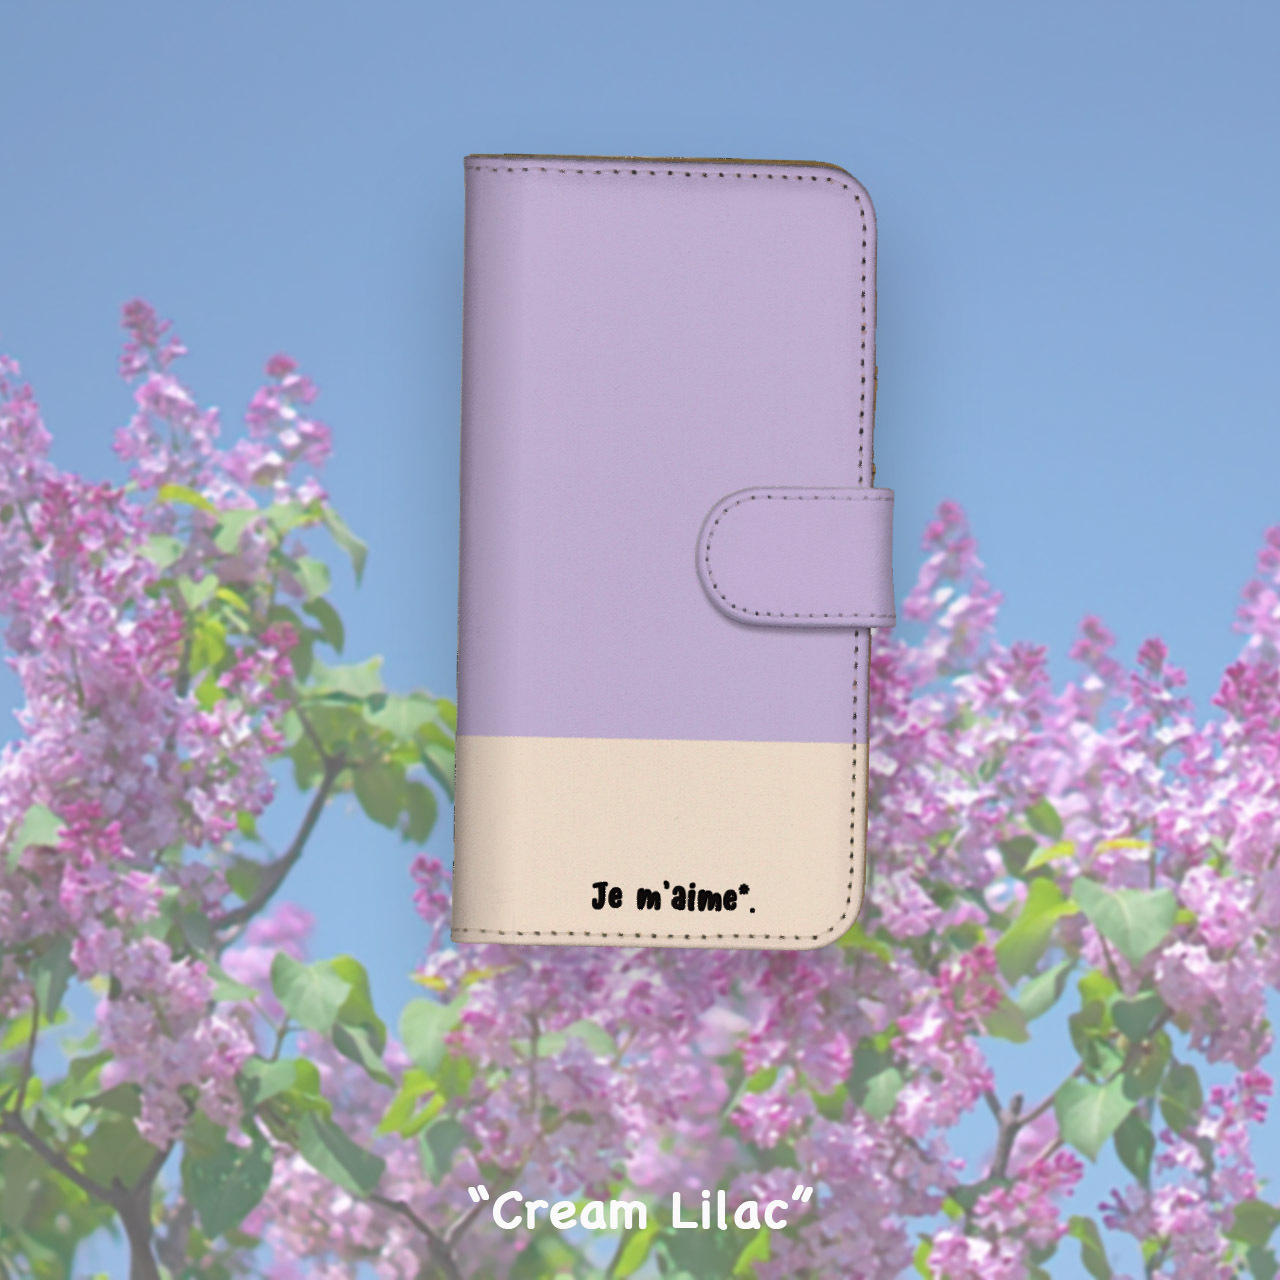 クリームライラック "Cream Lilac"